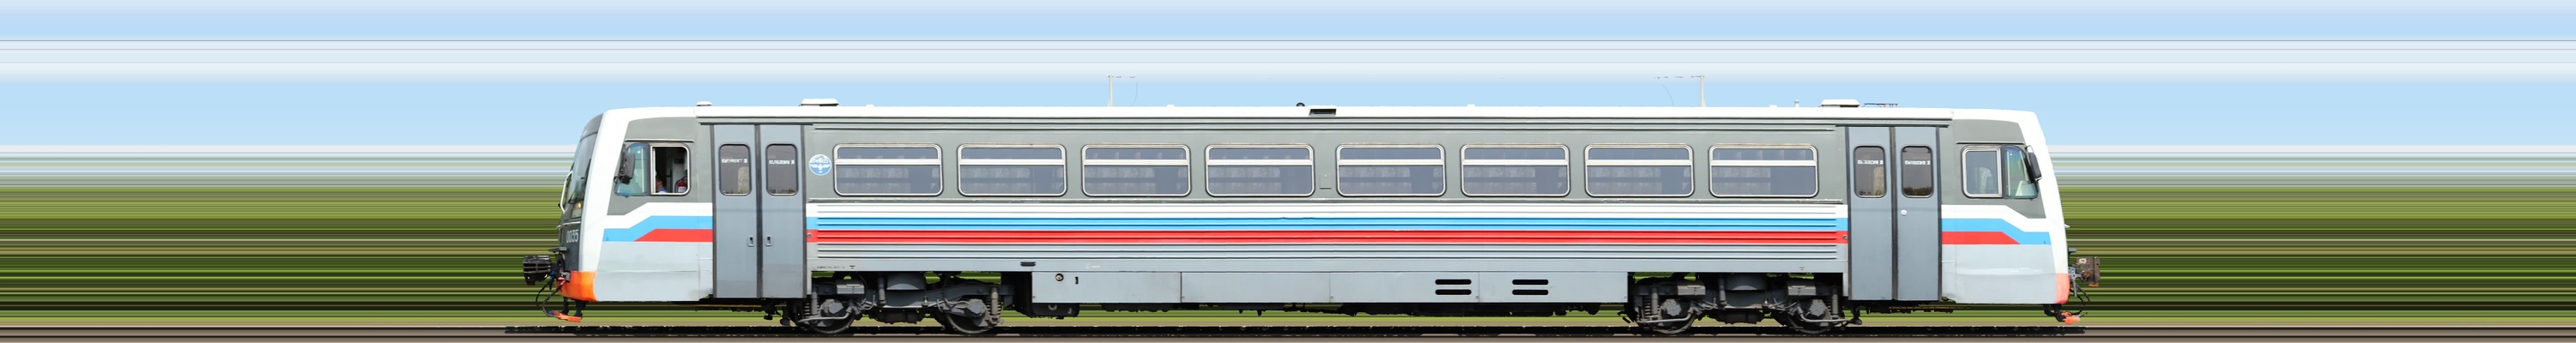 Train panorama